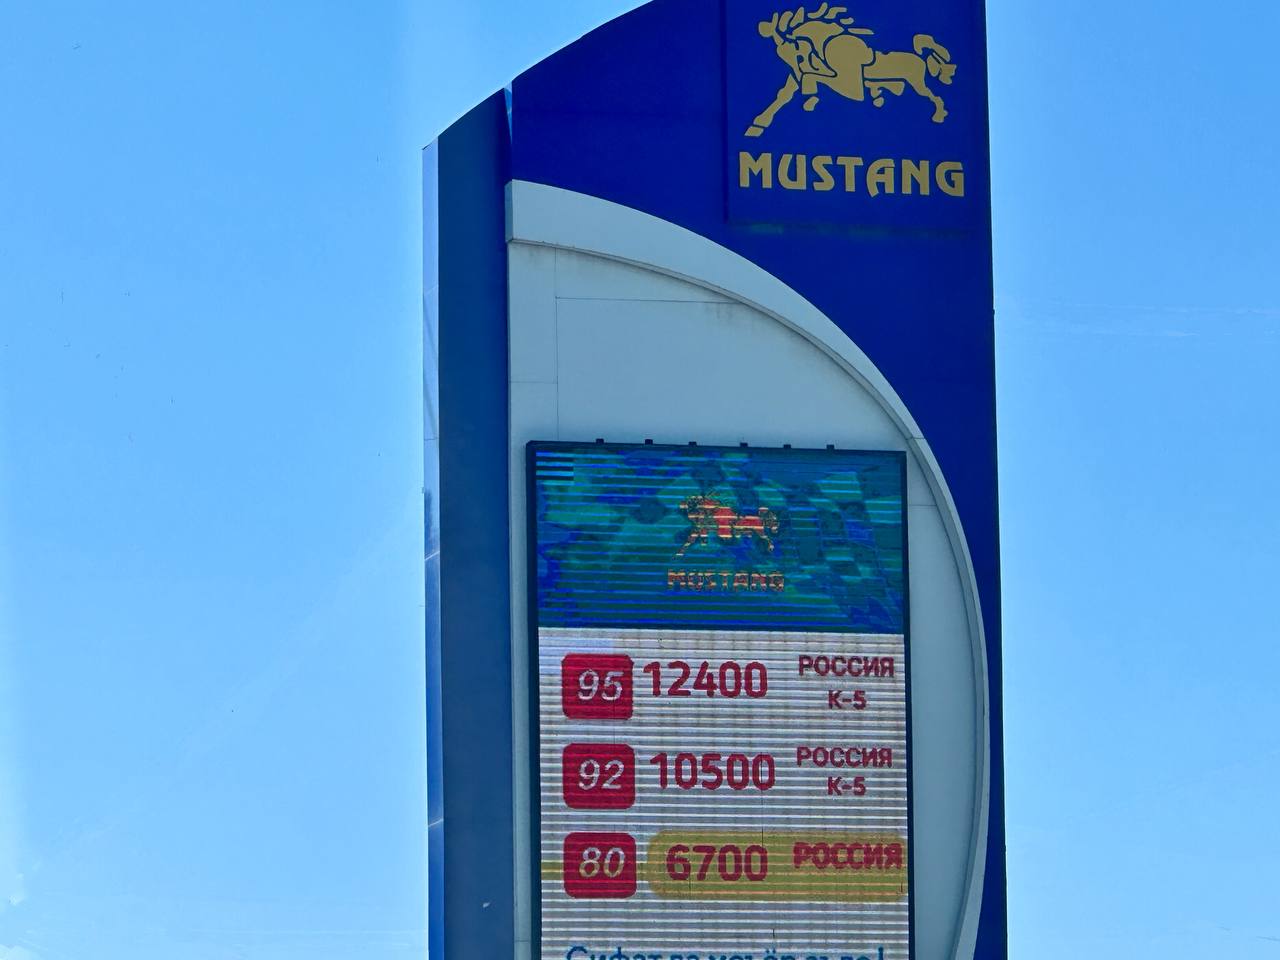 Цены на российский бензин на АЗС в Ташкенте выросли на 10%